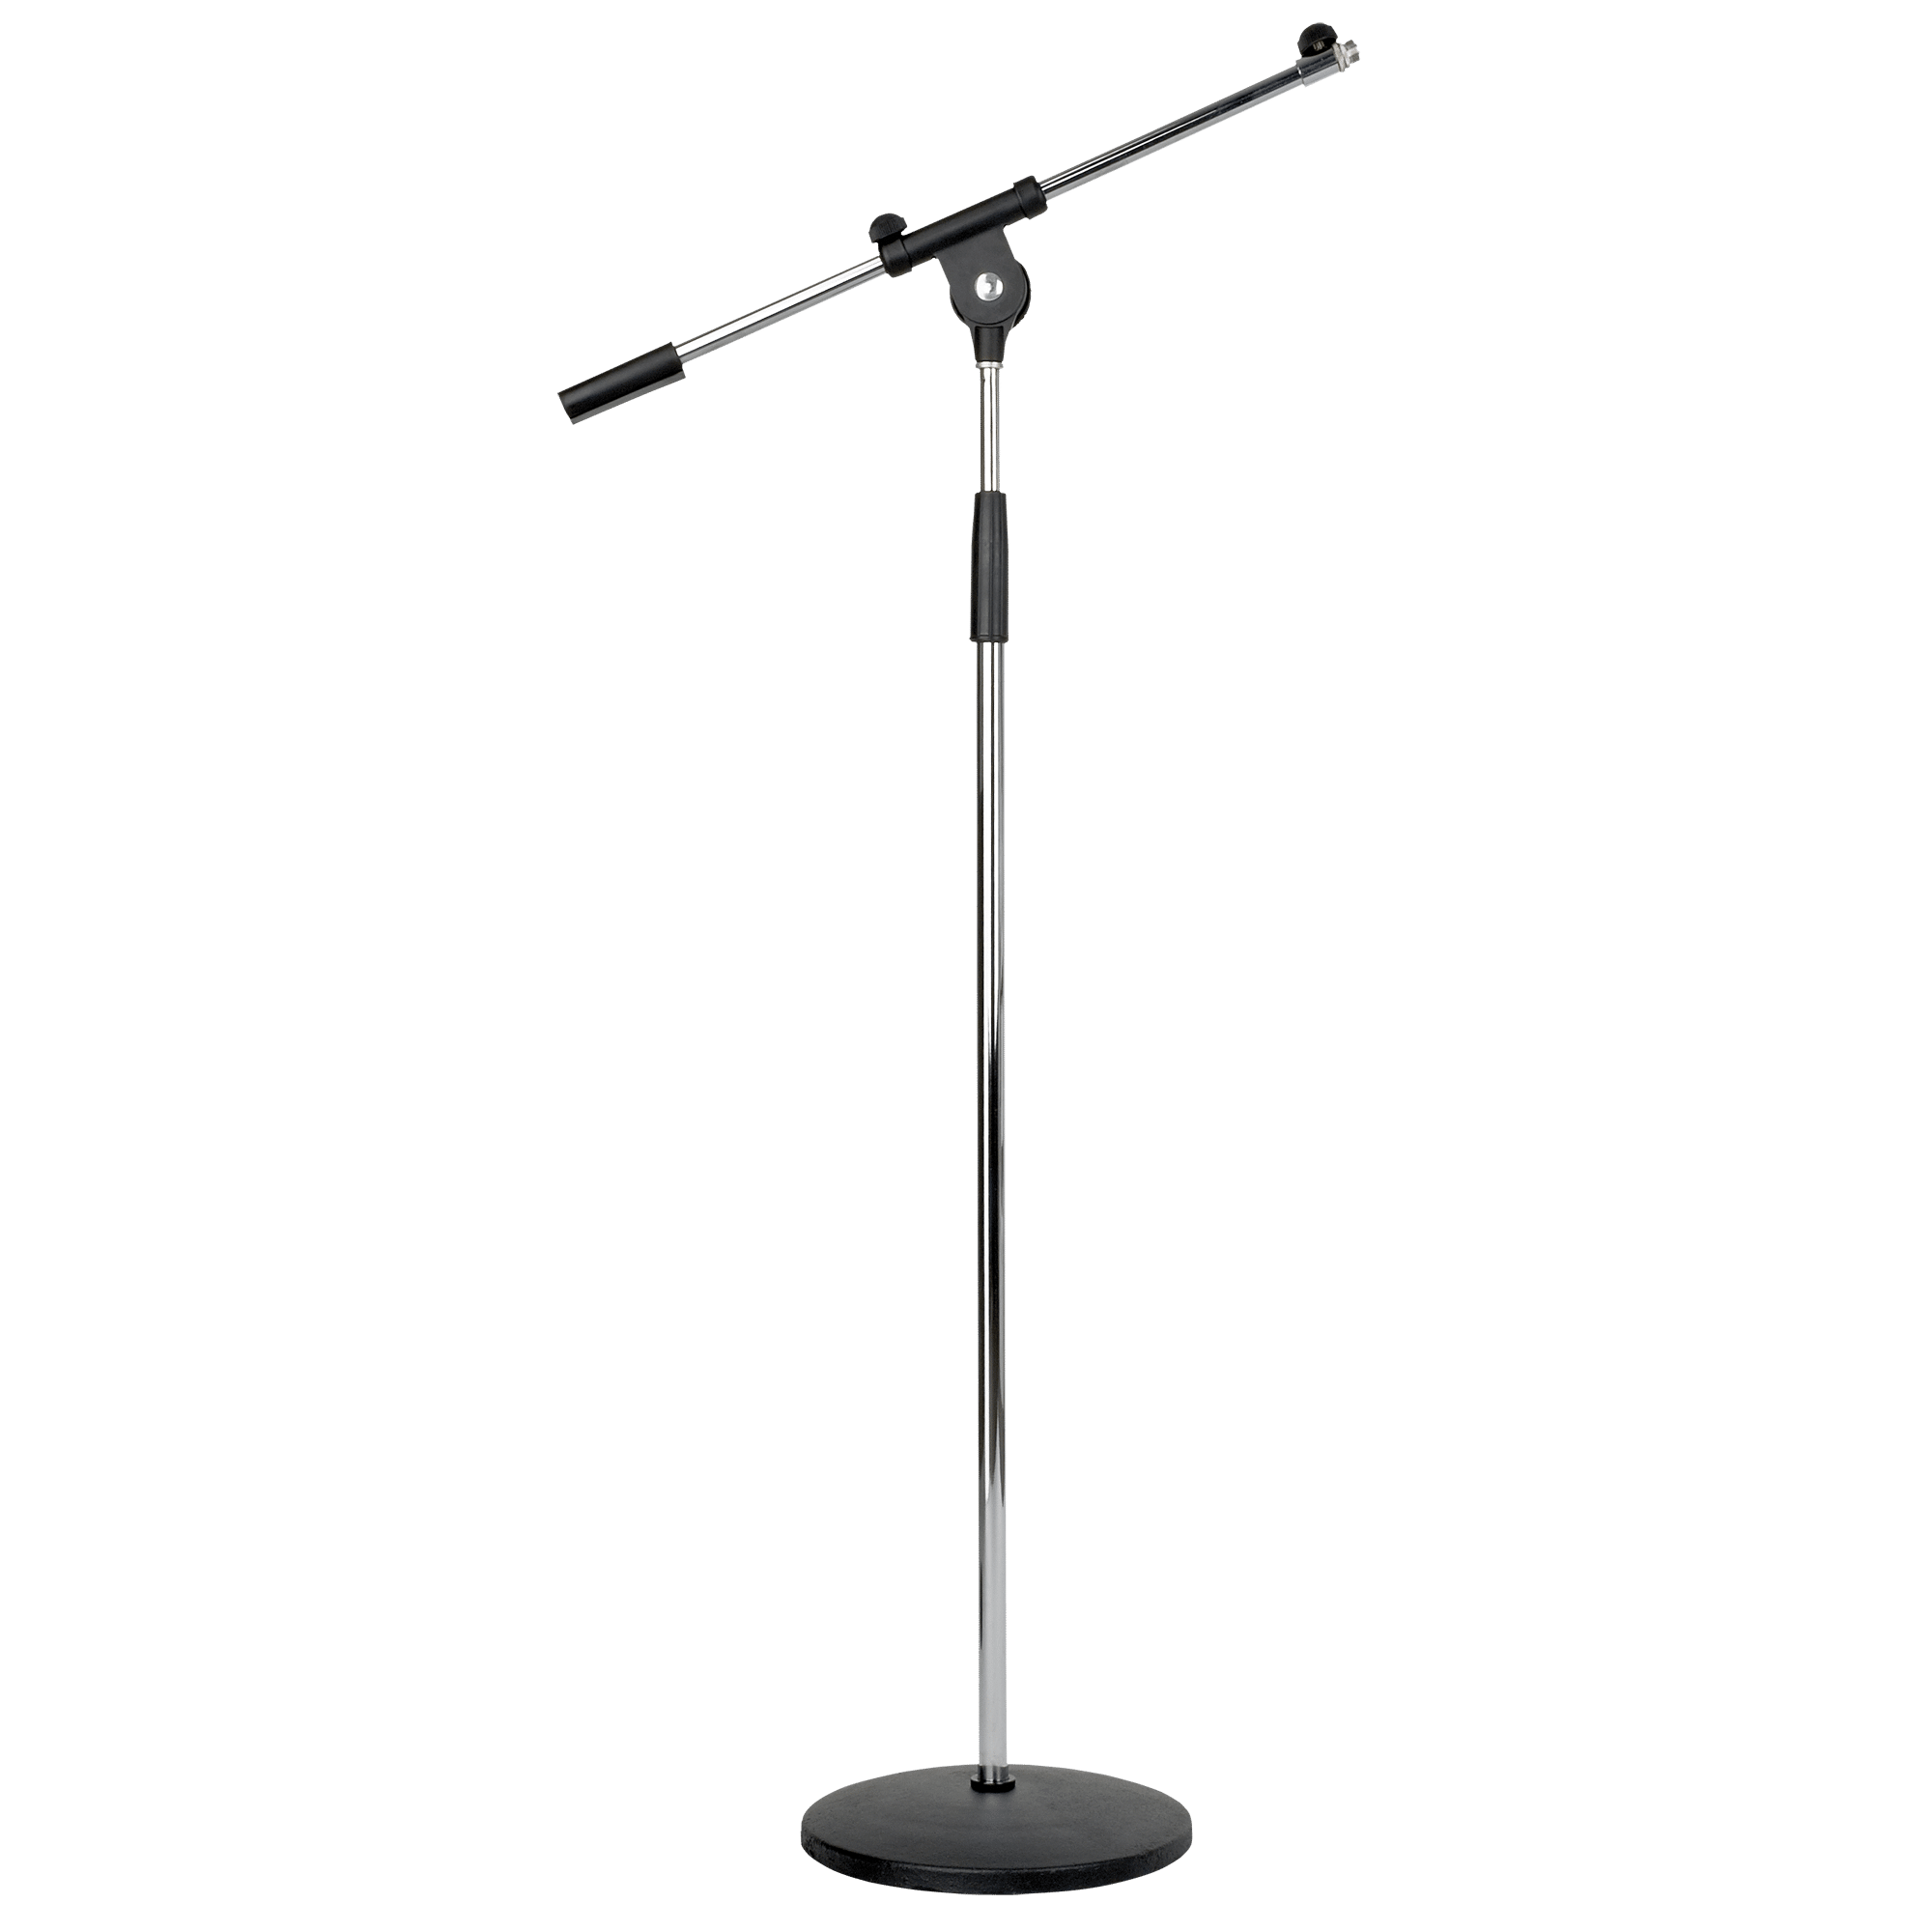 Microphone Stand - Onlinediscowinkel.nl